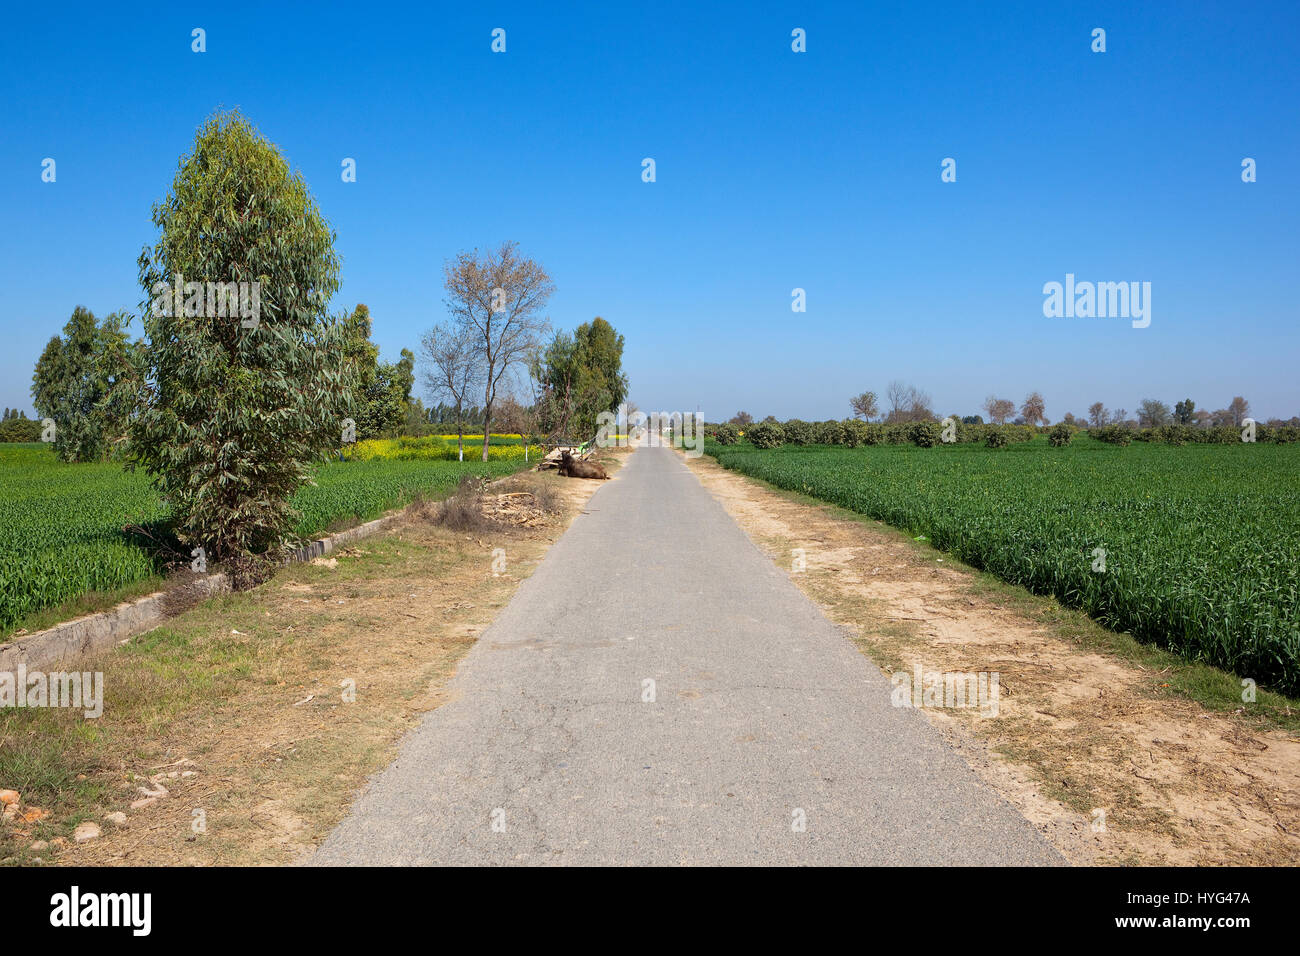 eine kleine Landstraße in Rajasthan Indien mit Bäumen Weizen und Senf Kulturen mit jungen Obstgärten unter strahlend blauem Himmel Stockfoto